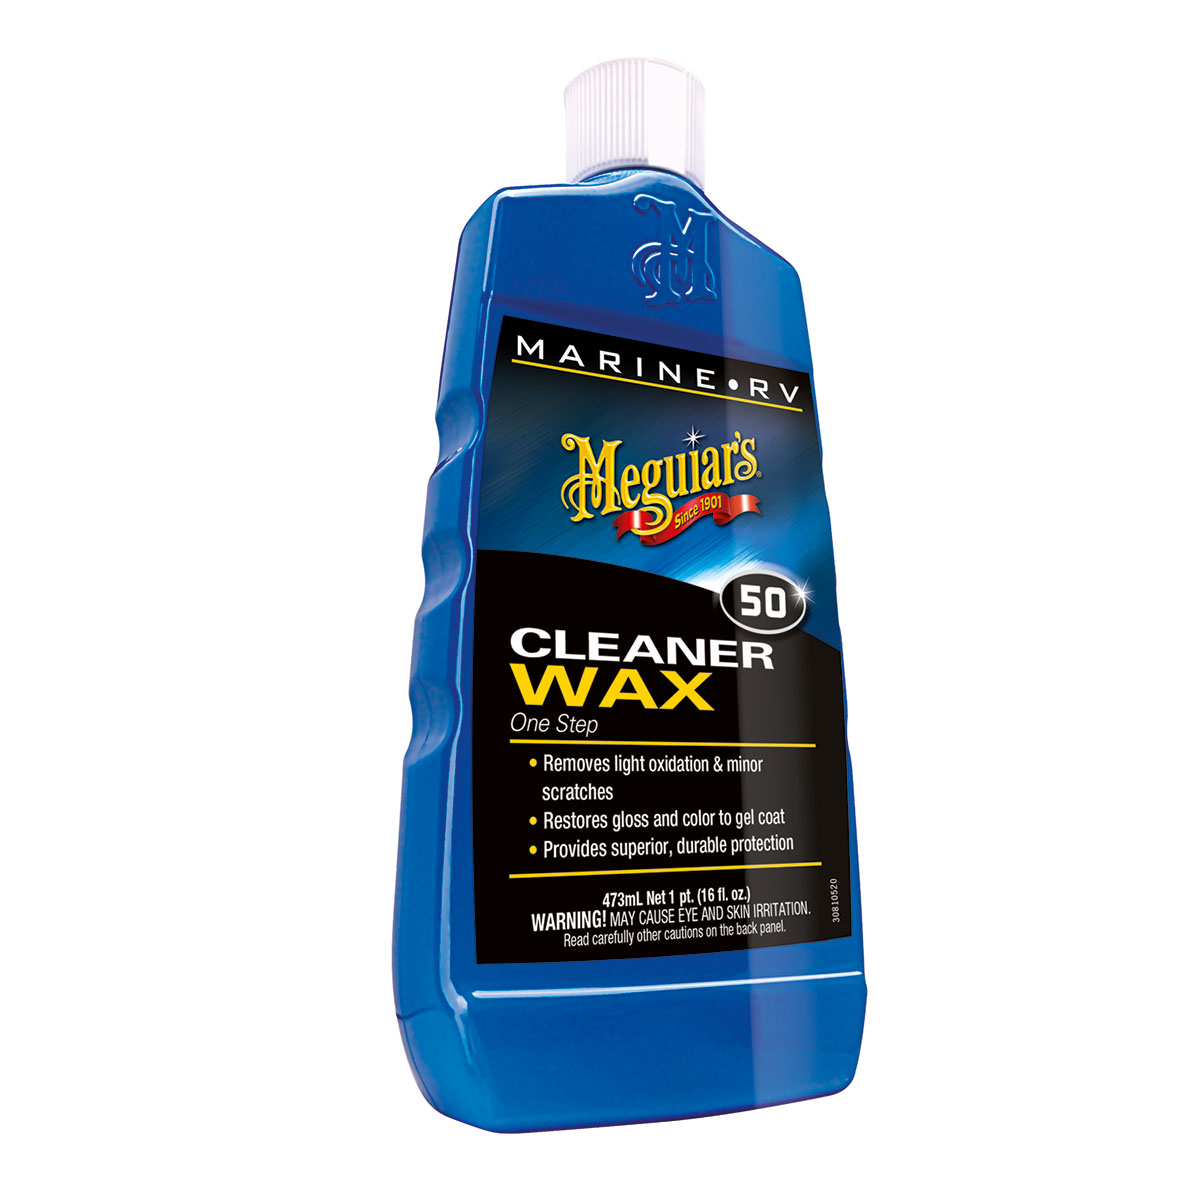 MEGUIARS Cleaner Wax One Step Liquid - 473 ml // ABVERKAUF zum radikalen Sonderpreis, nur solange Vorrat reicht